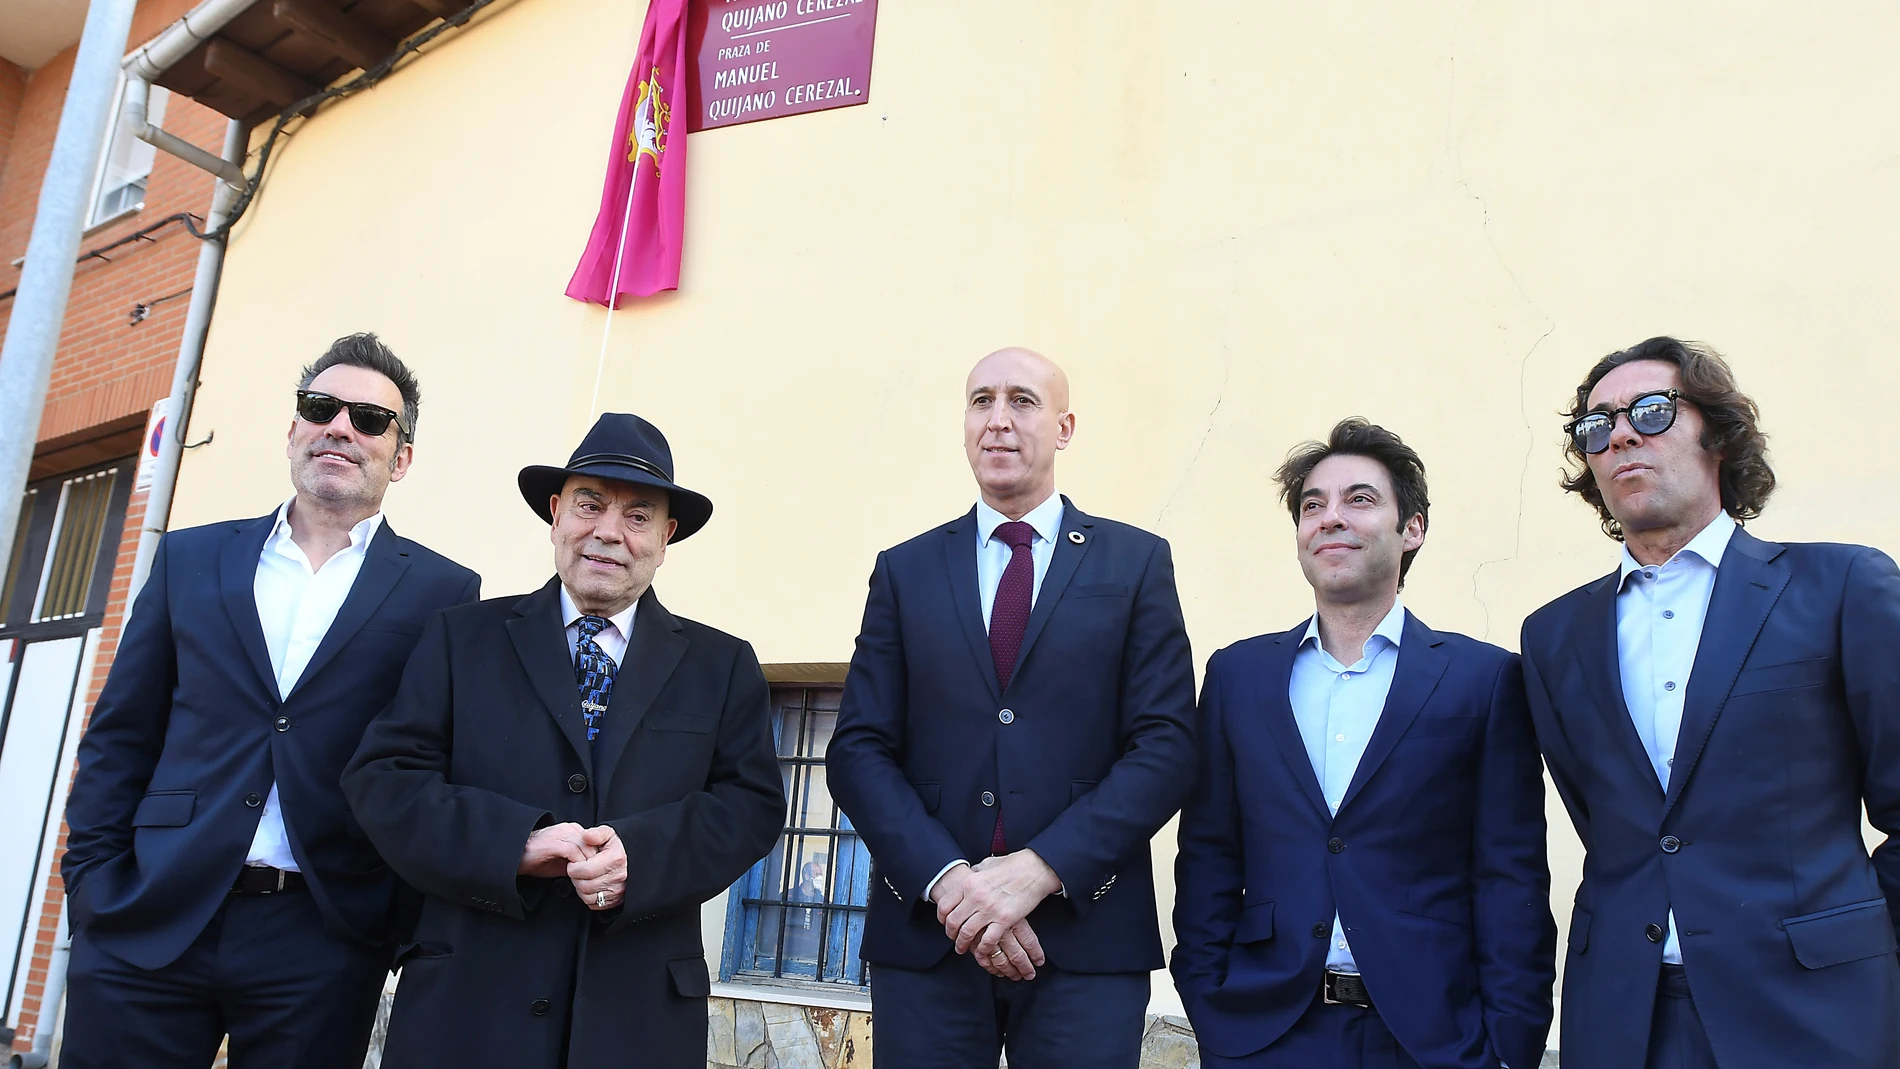 El alcalde de León José Antonio Diez (en el centro), y Manuel Quijano Cerezal, acompañado por sus hijos Manuel, Raúl y Óscar